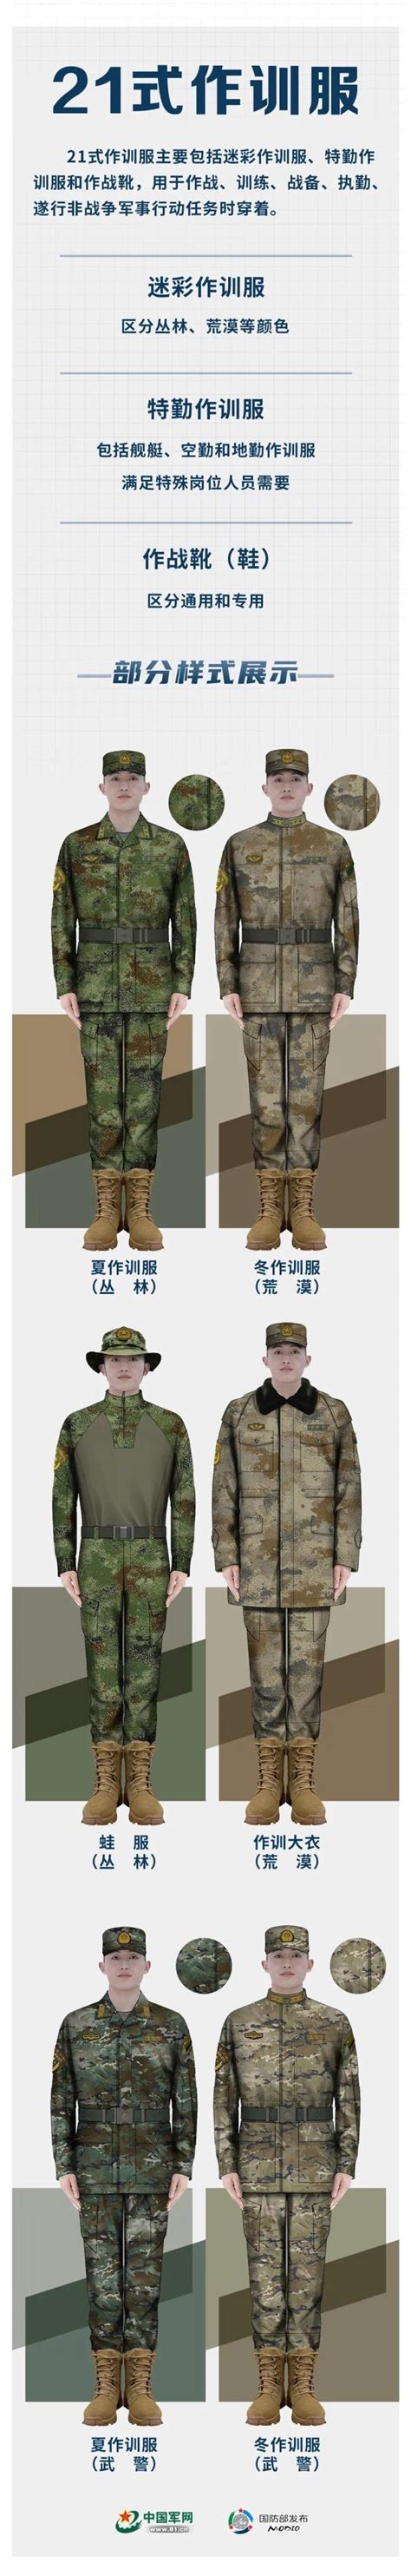 国防部介绍的“21式军服” 高清细节大图来了_新闻频道_中华网